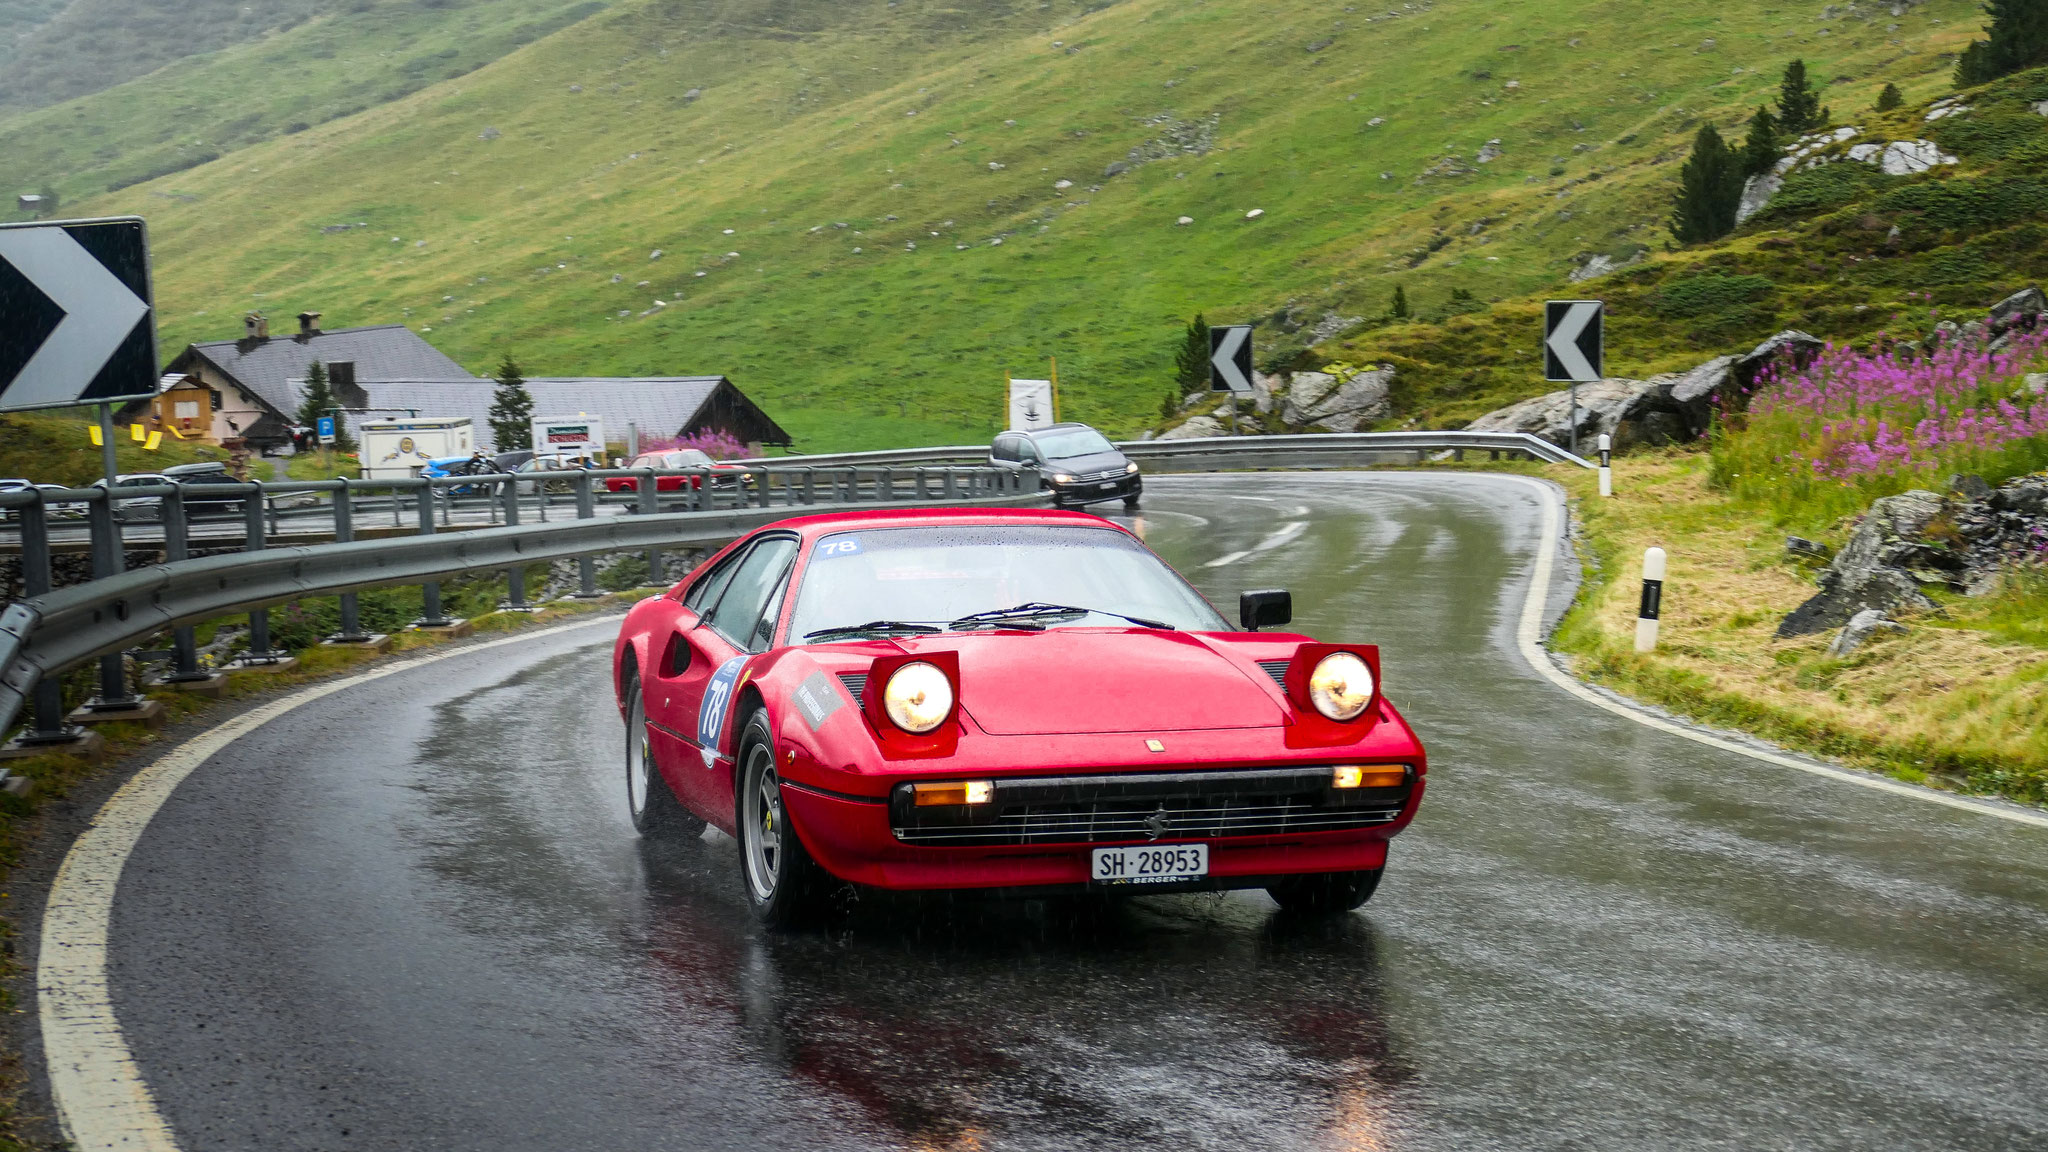 Ferrari 308 GTB - SH-28953 (CH)